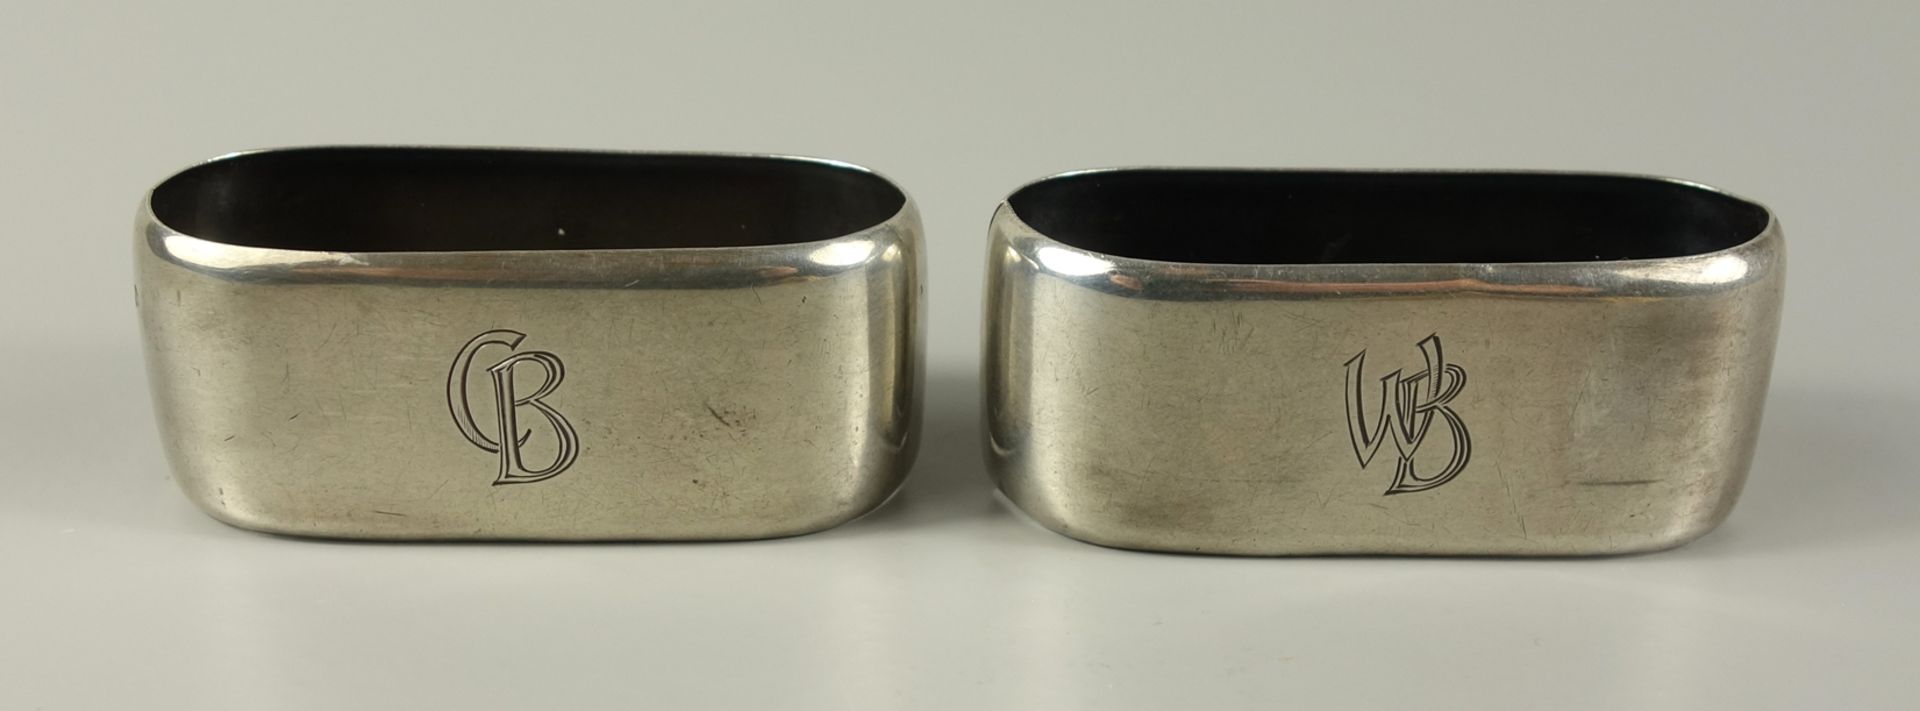 Paar Serviettenringe mit Mogrammen "CB" und "WB", 835er Silber, Maße 6,3*2,6cm, Gew.32g Pair of